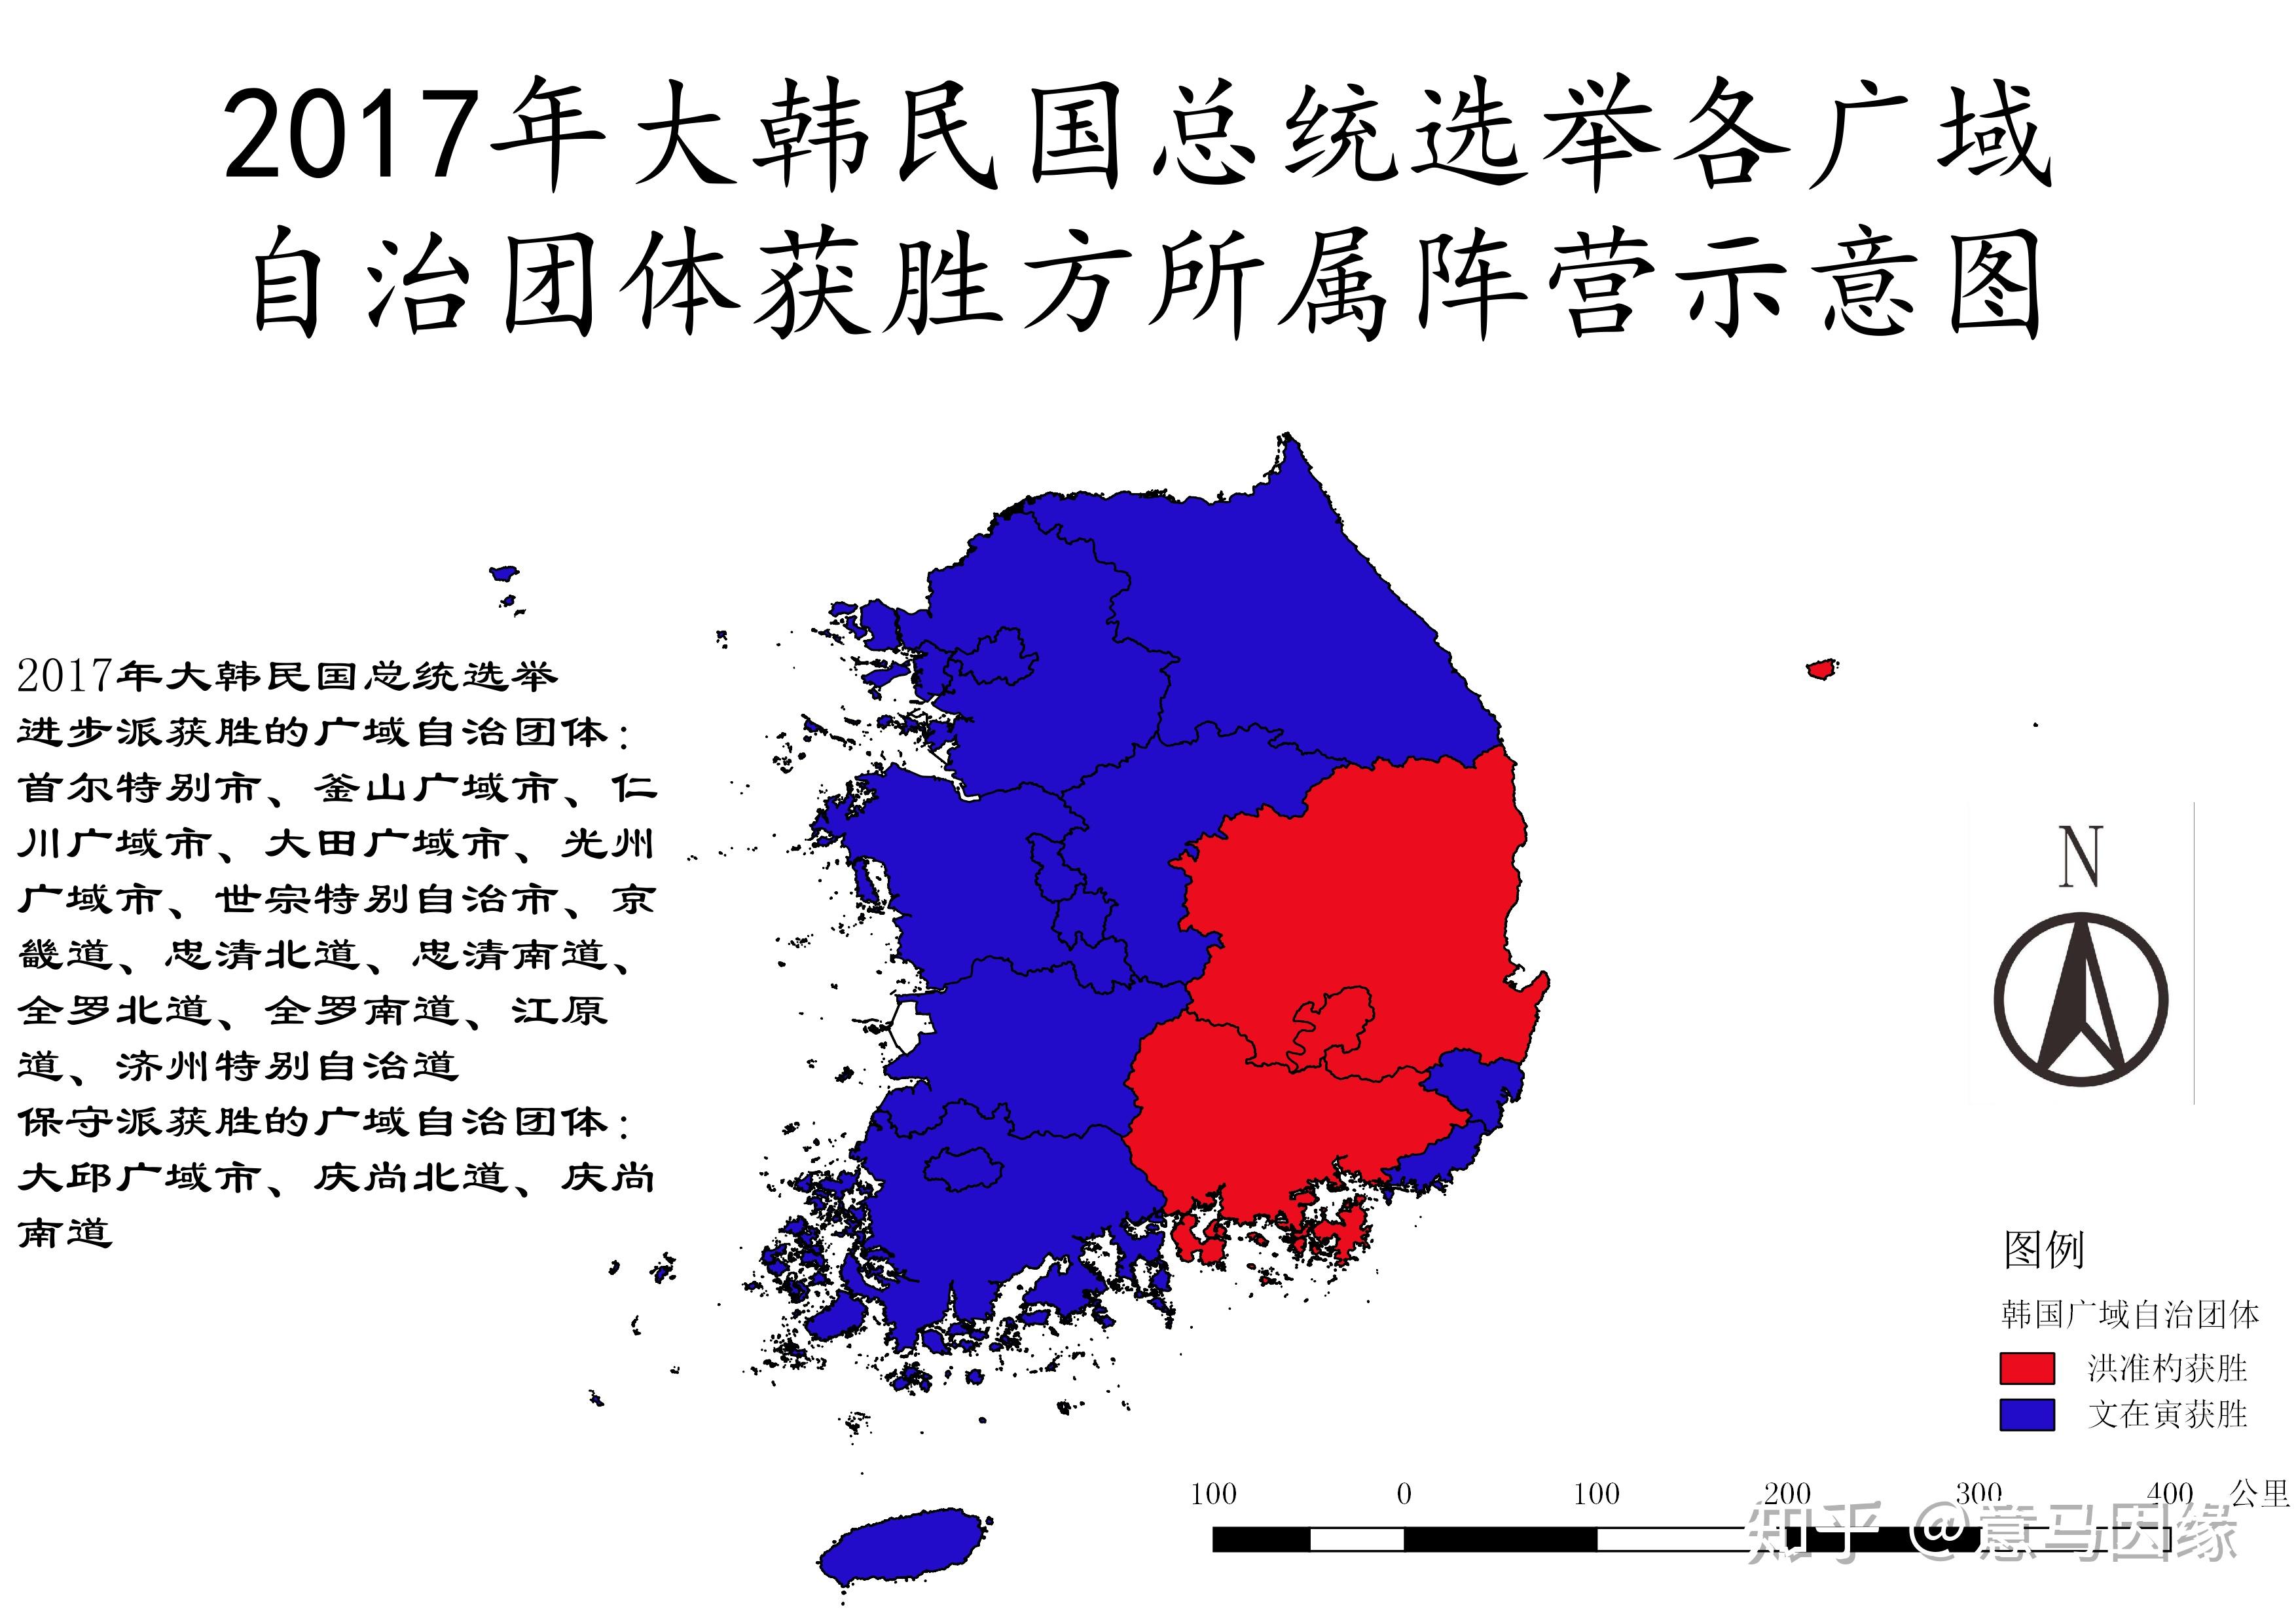 韩国大选投票时间延长 为防作弊调慢计票速度|投票|韩国|韩国大选_新浪新闻